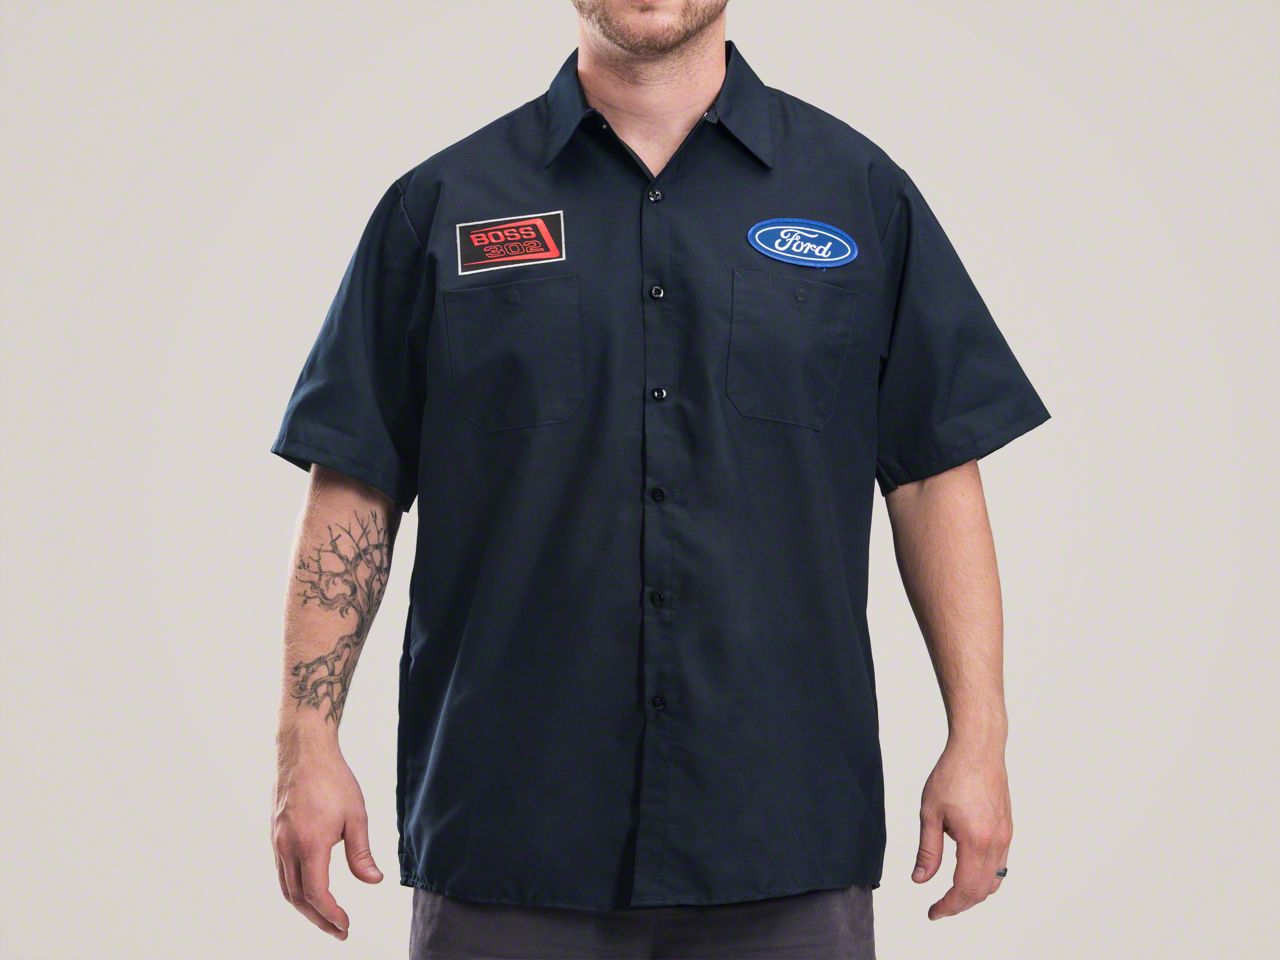 Boss 302 Mechanics Shirt